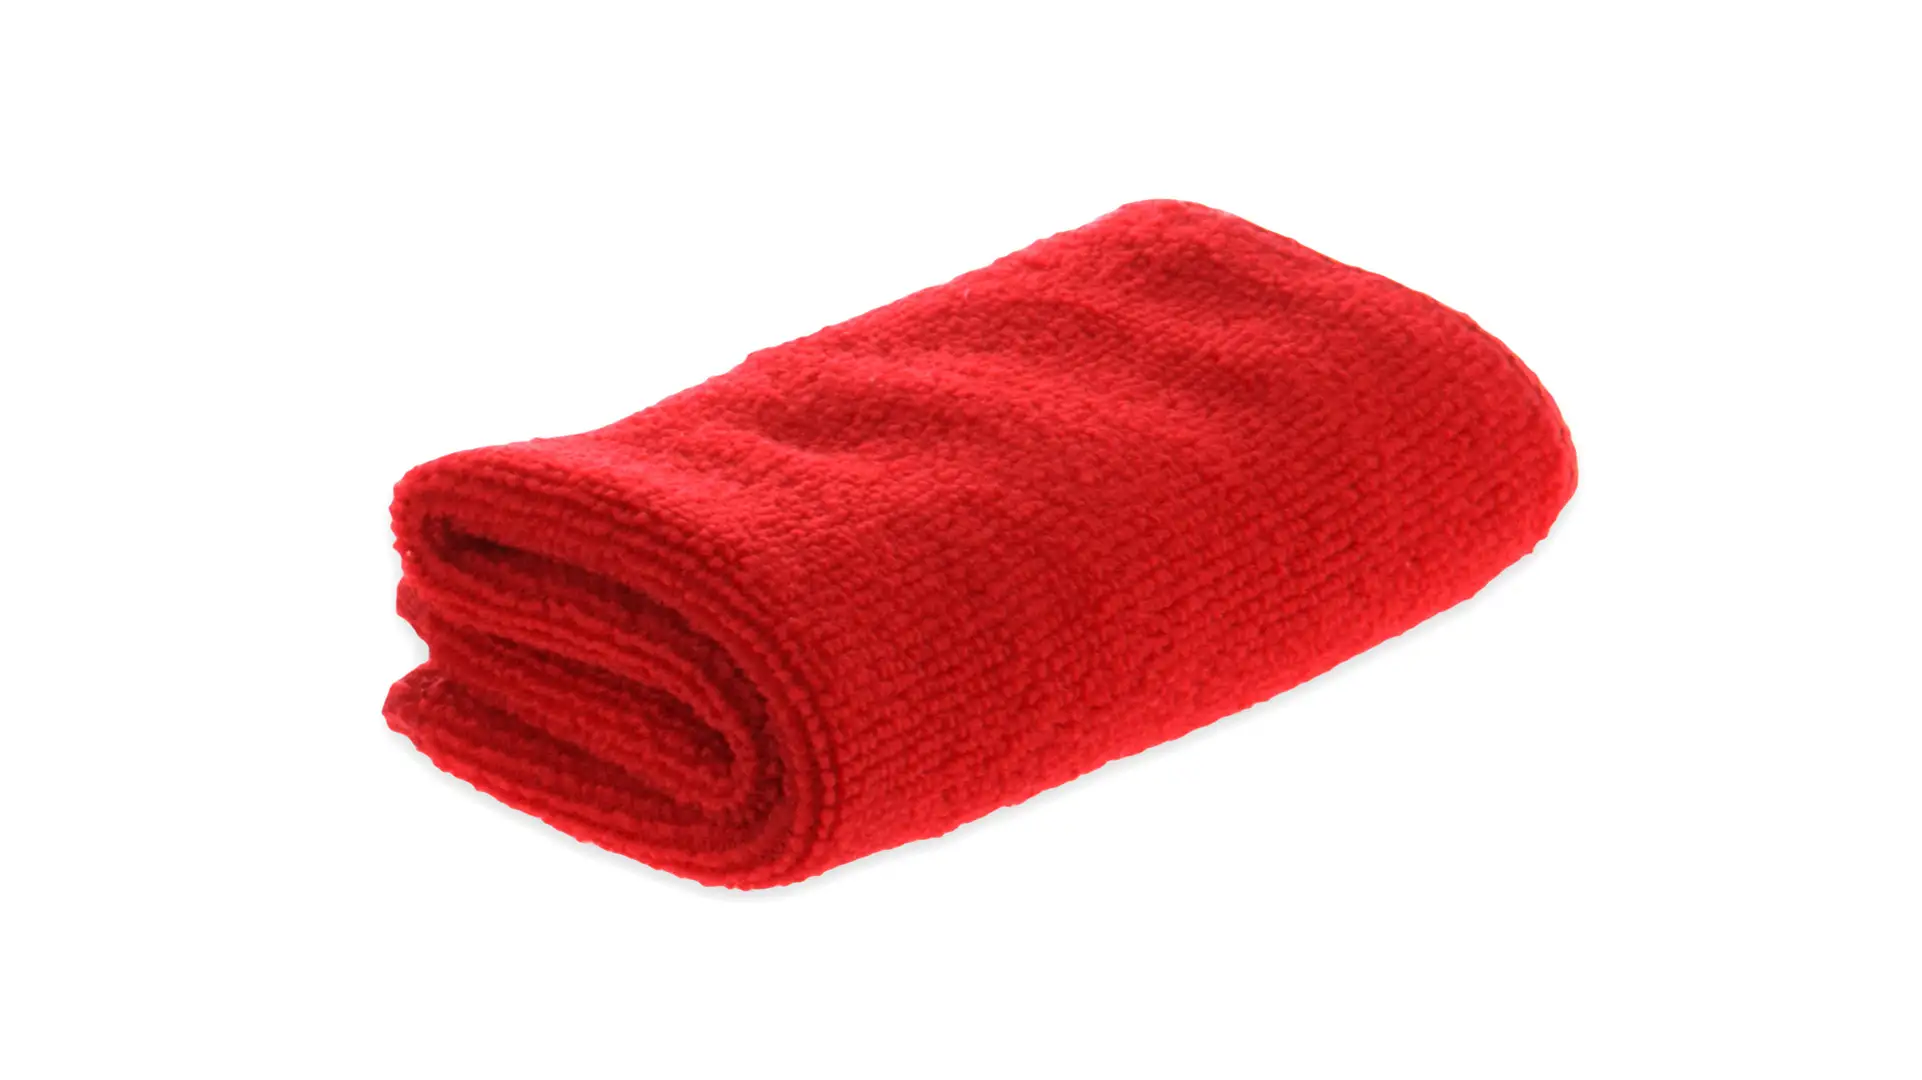 Asciugamano/Lavetta Piegato nella Simpatica Forma di Cagnolino Personalizzata Ideale come Idea Gadget Regalo